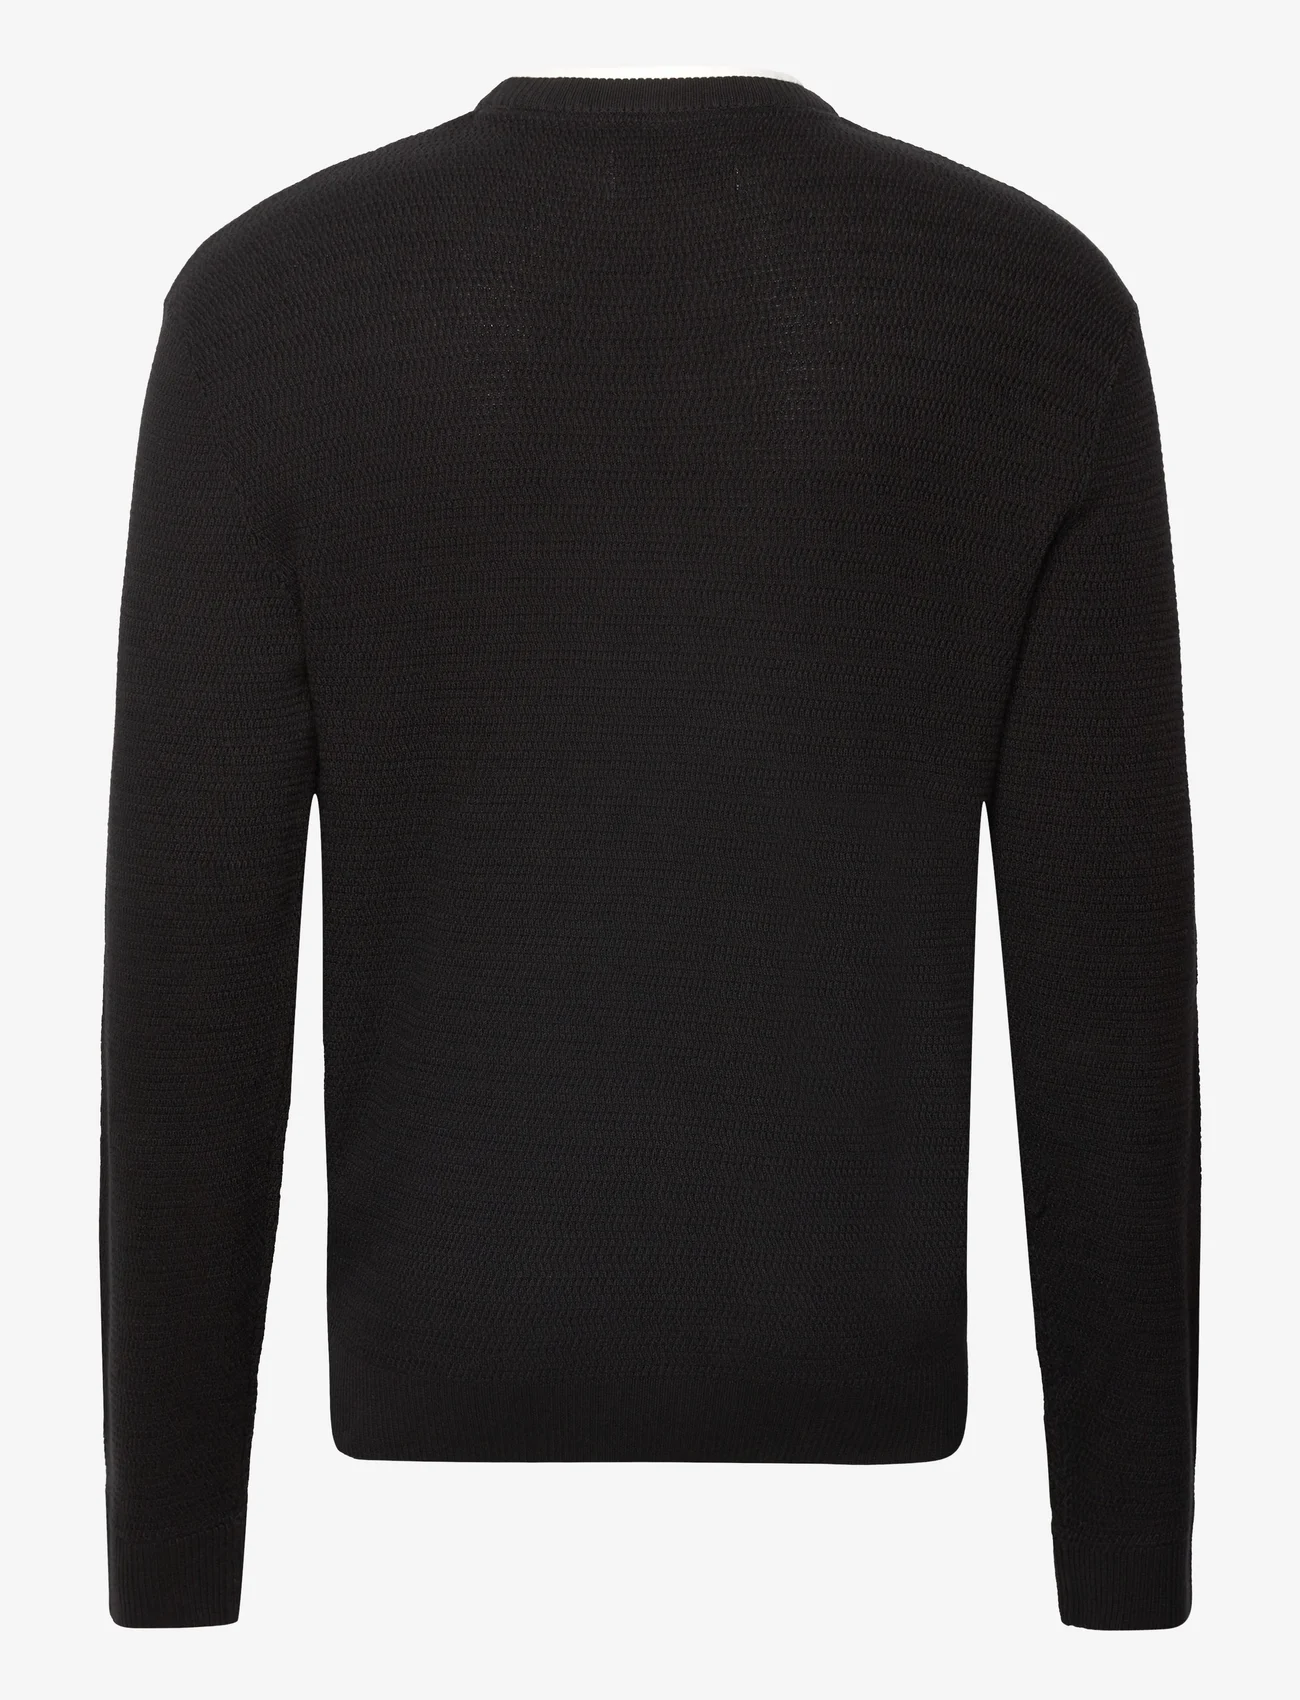 Tom Tailor - structured doublelayer knit - laveste priser - black - 1